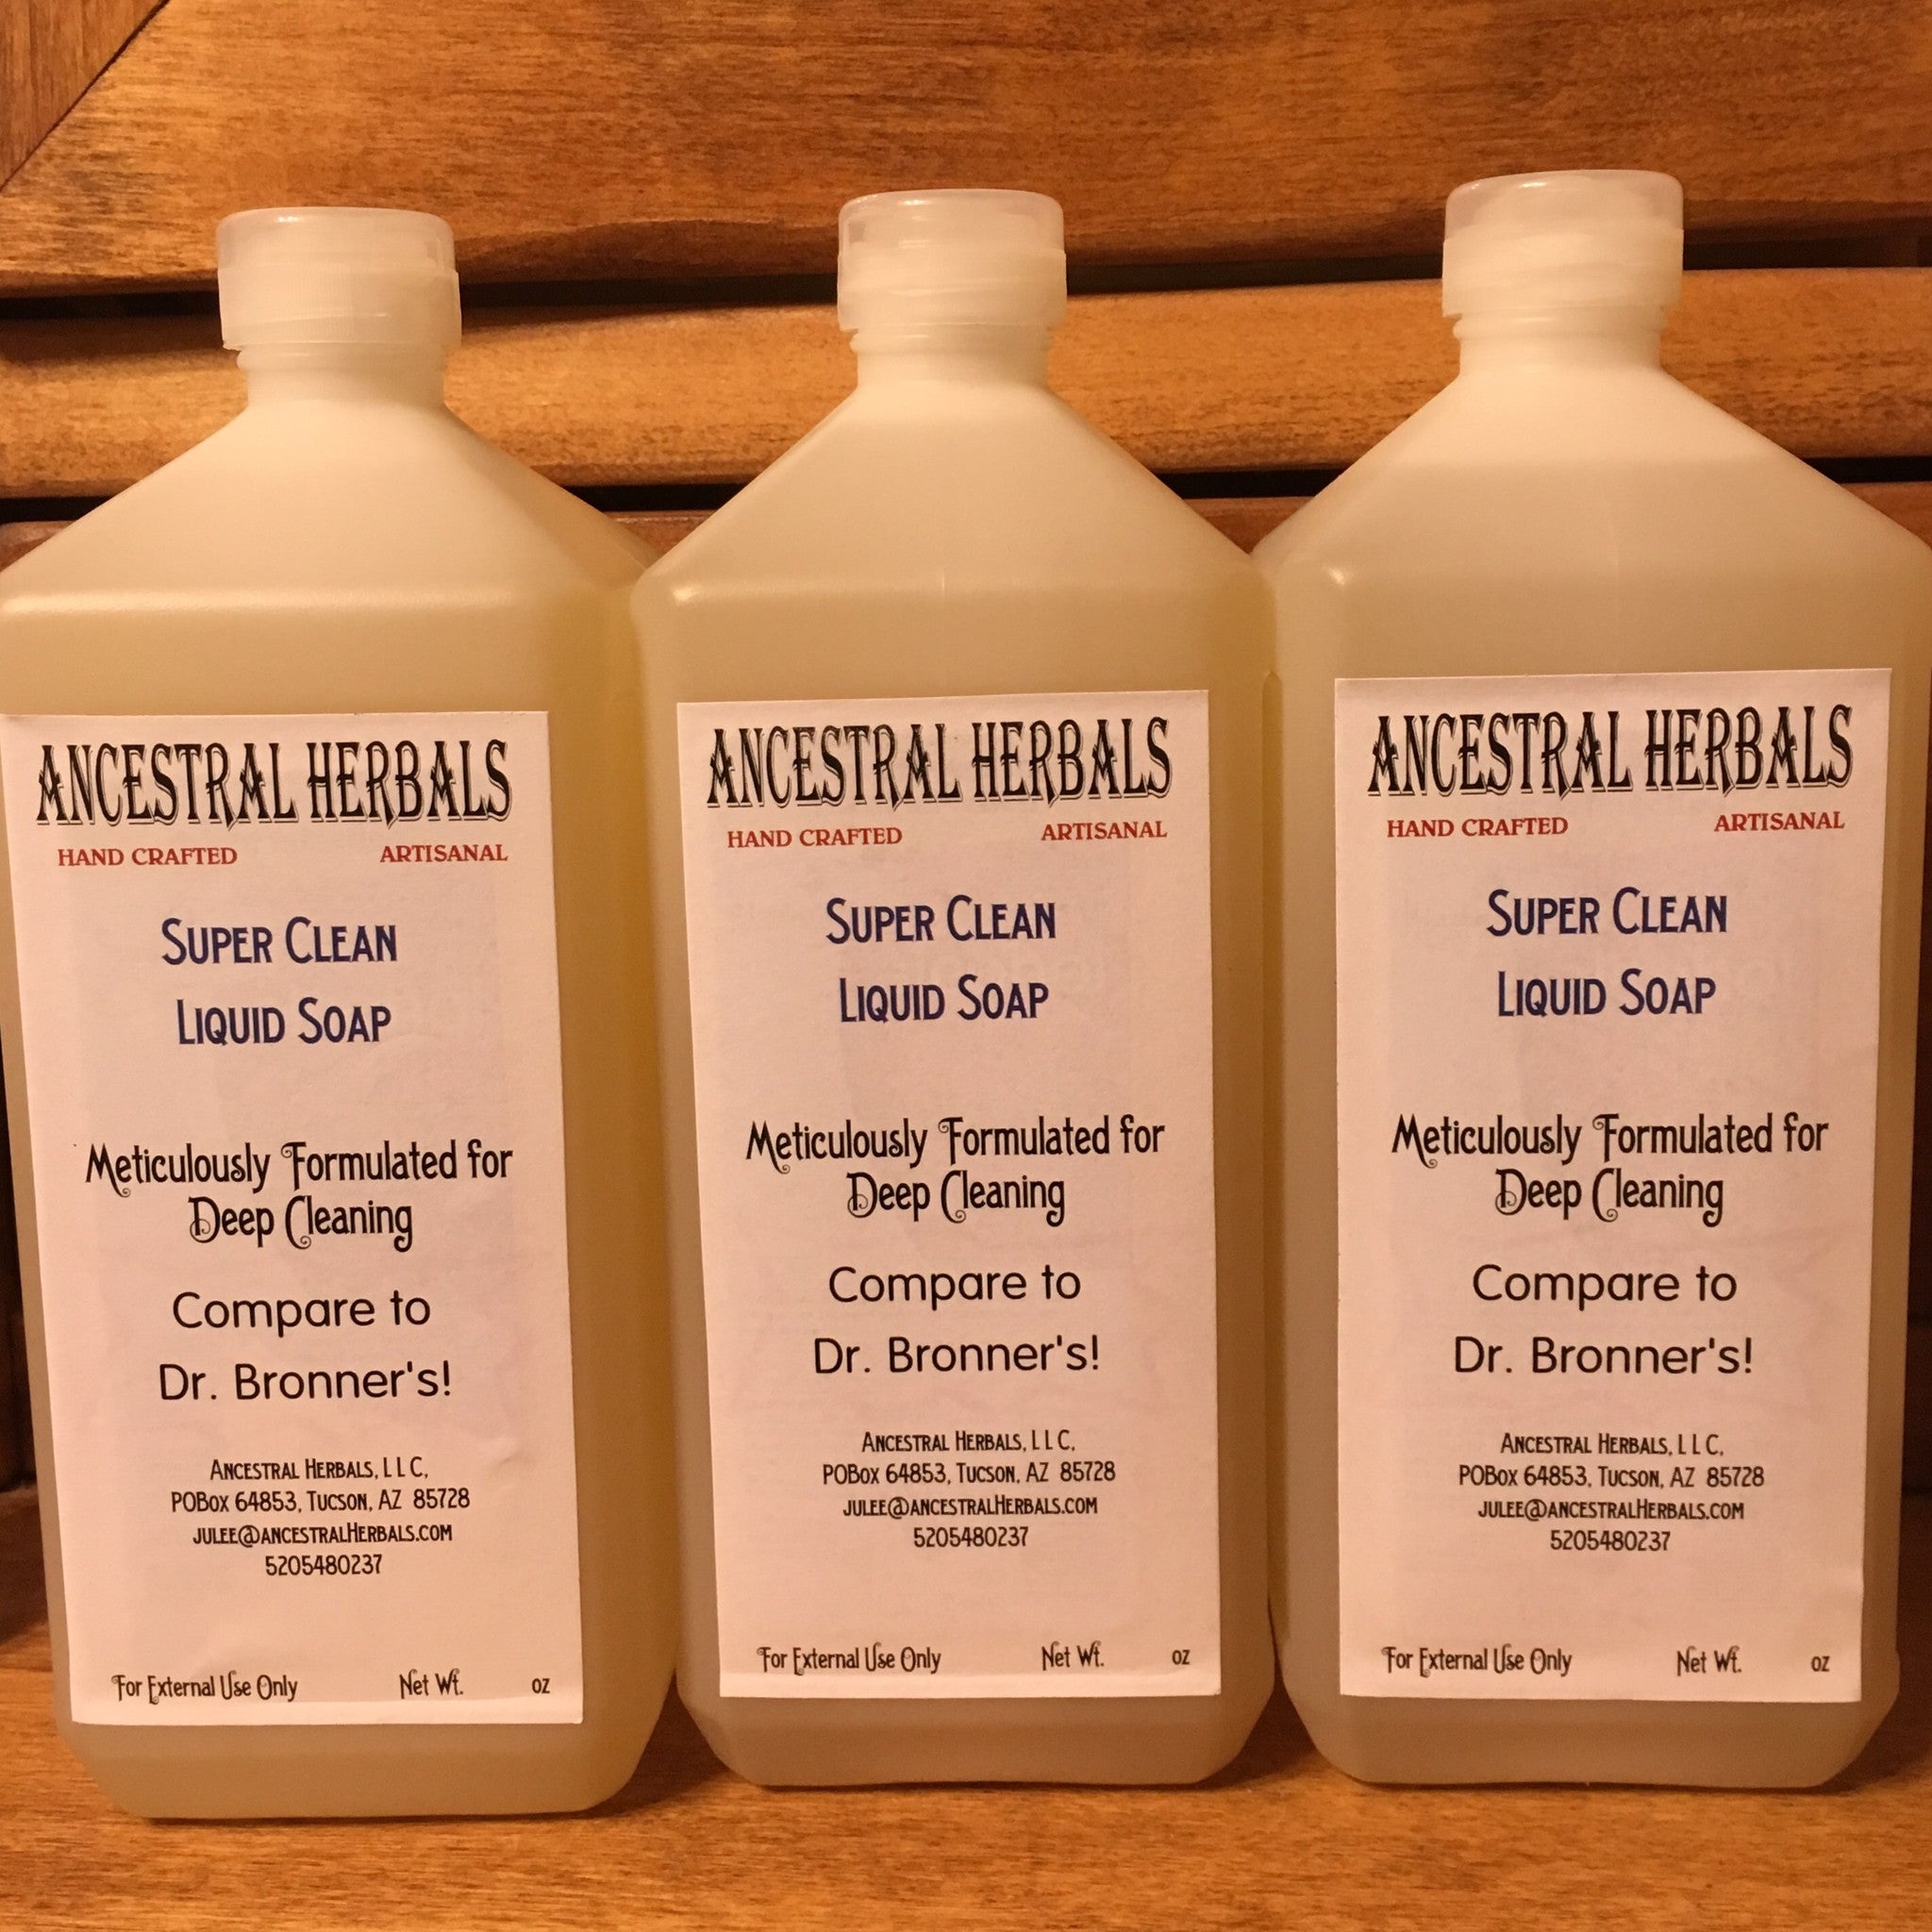 Super Clean Liquid Soap